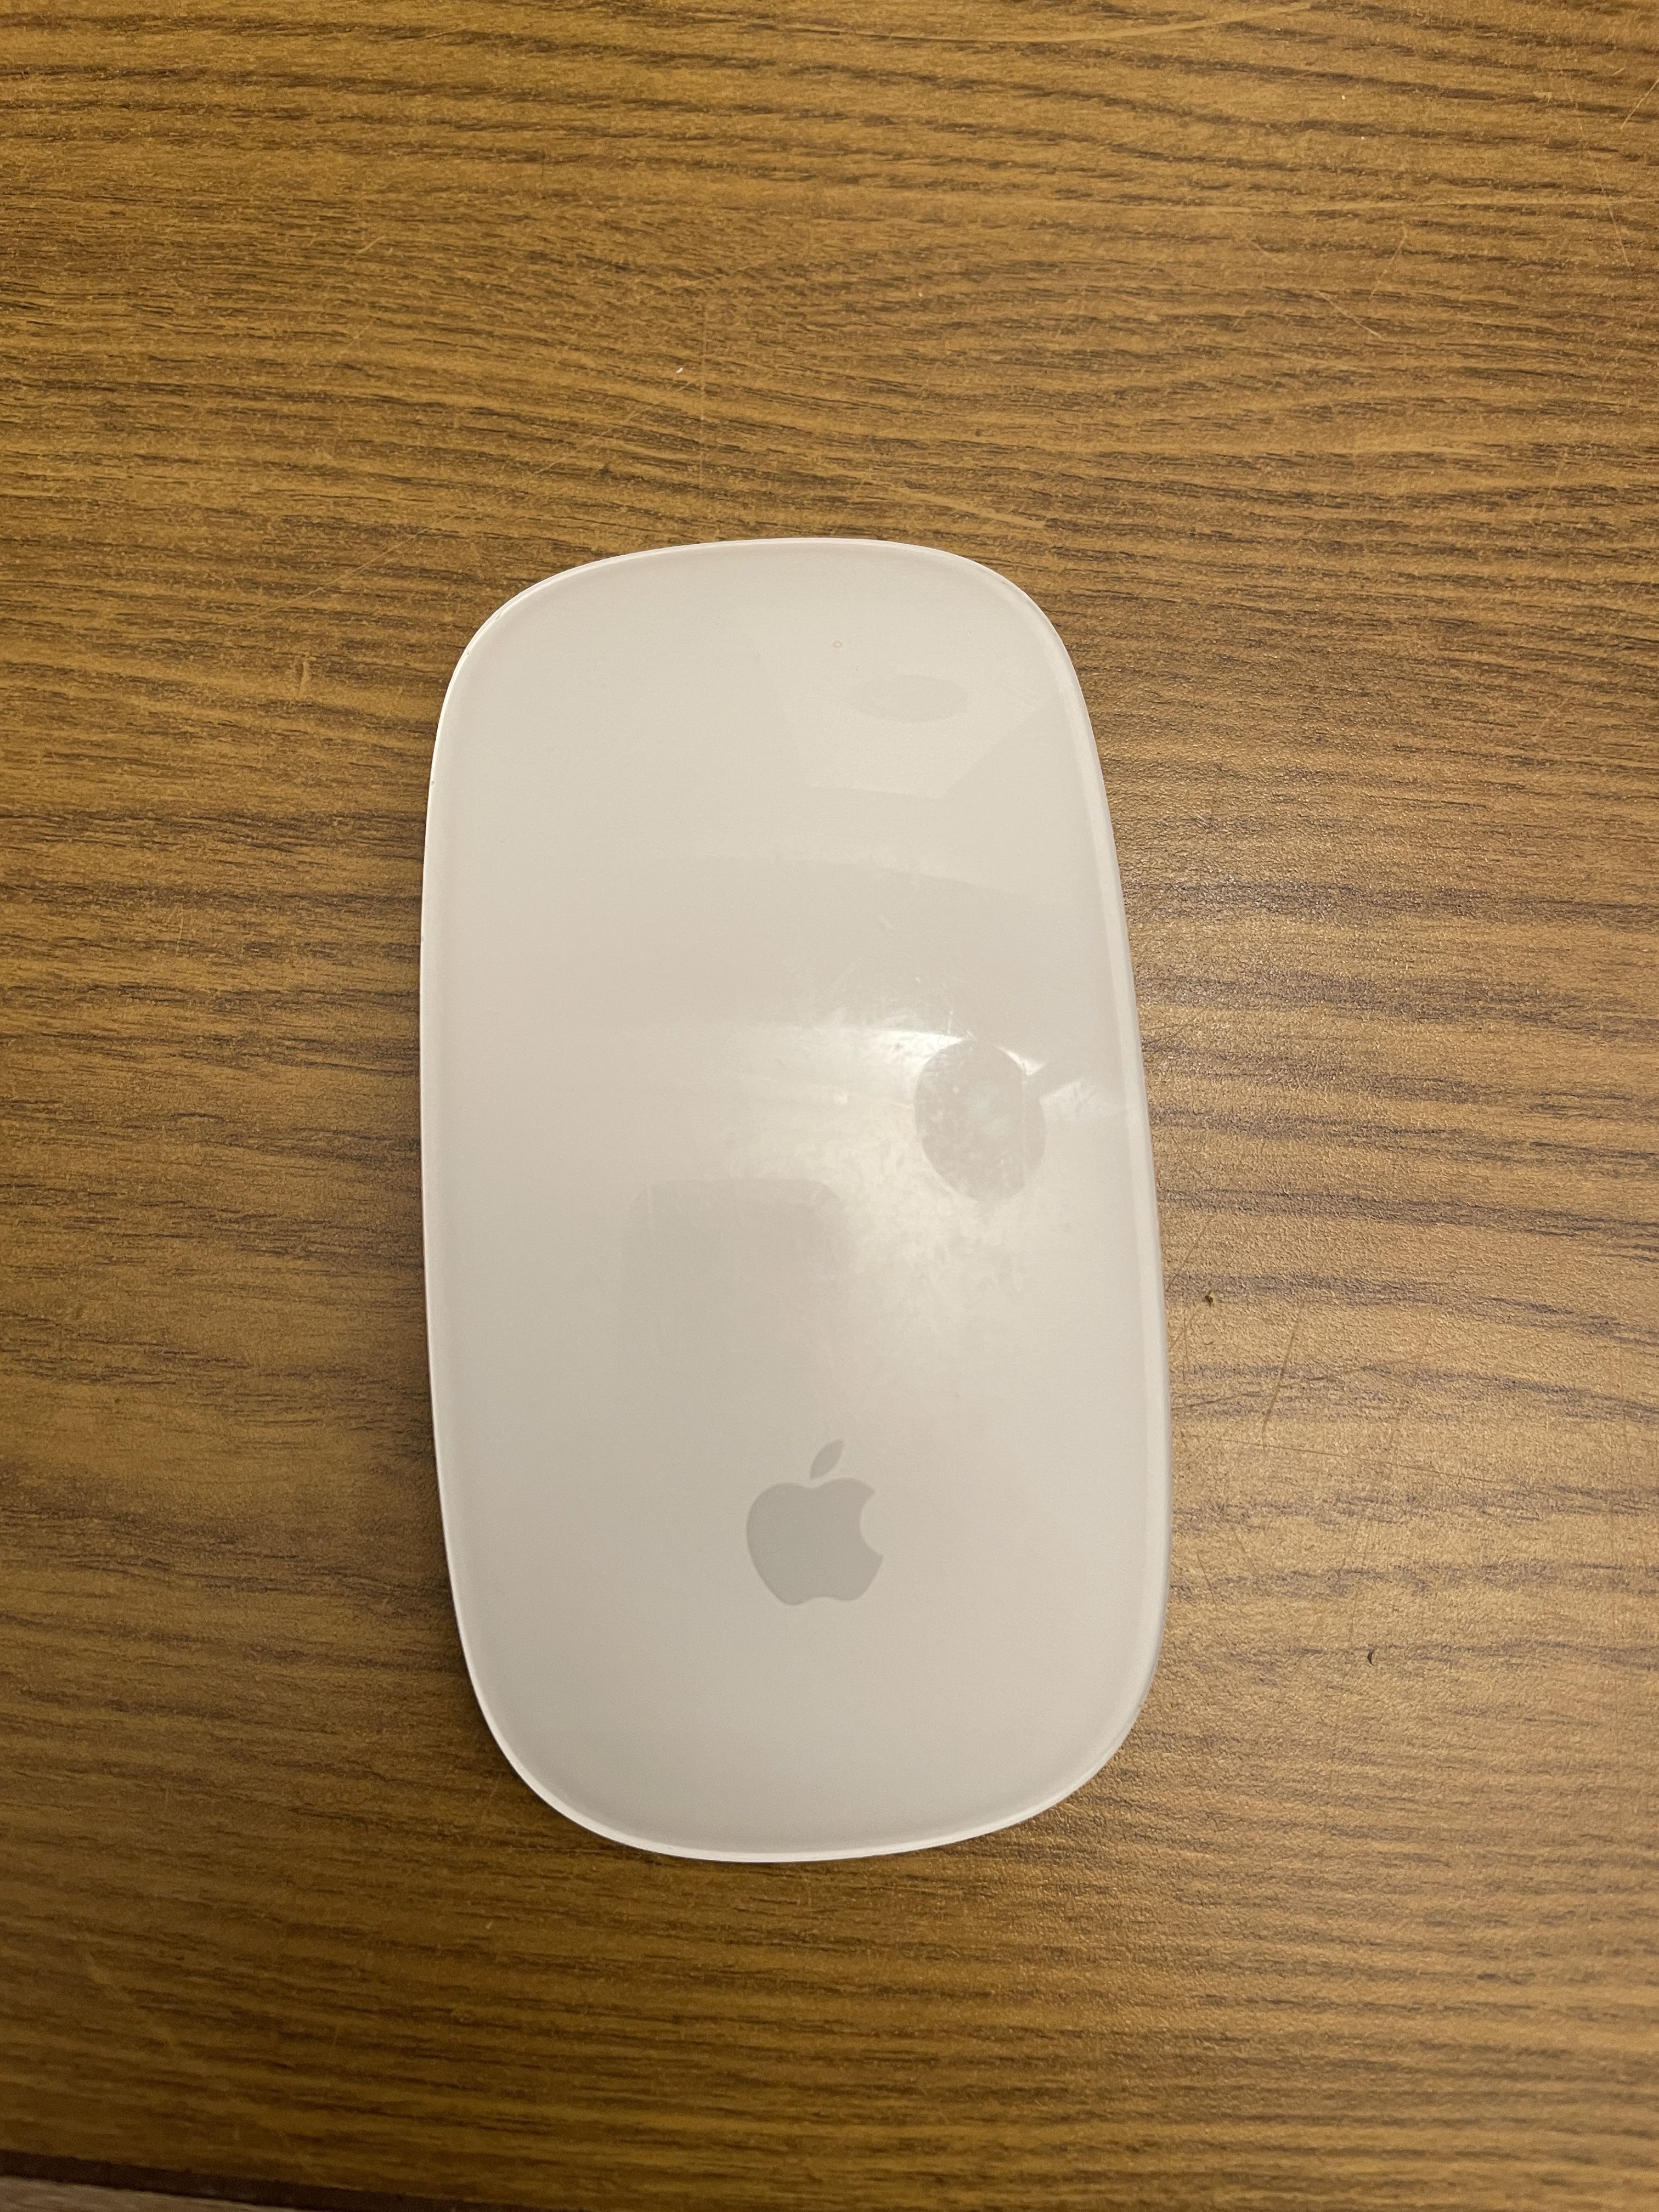 Apple A1296 Magic Mouse